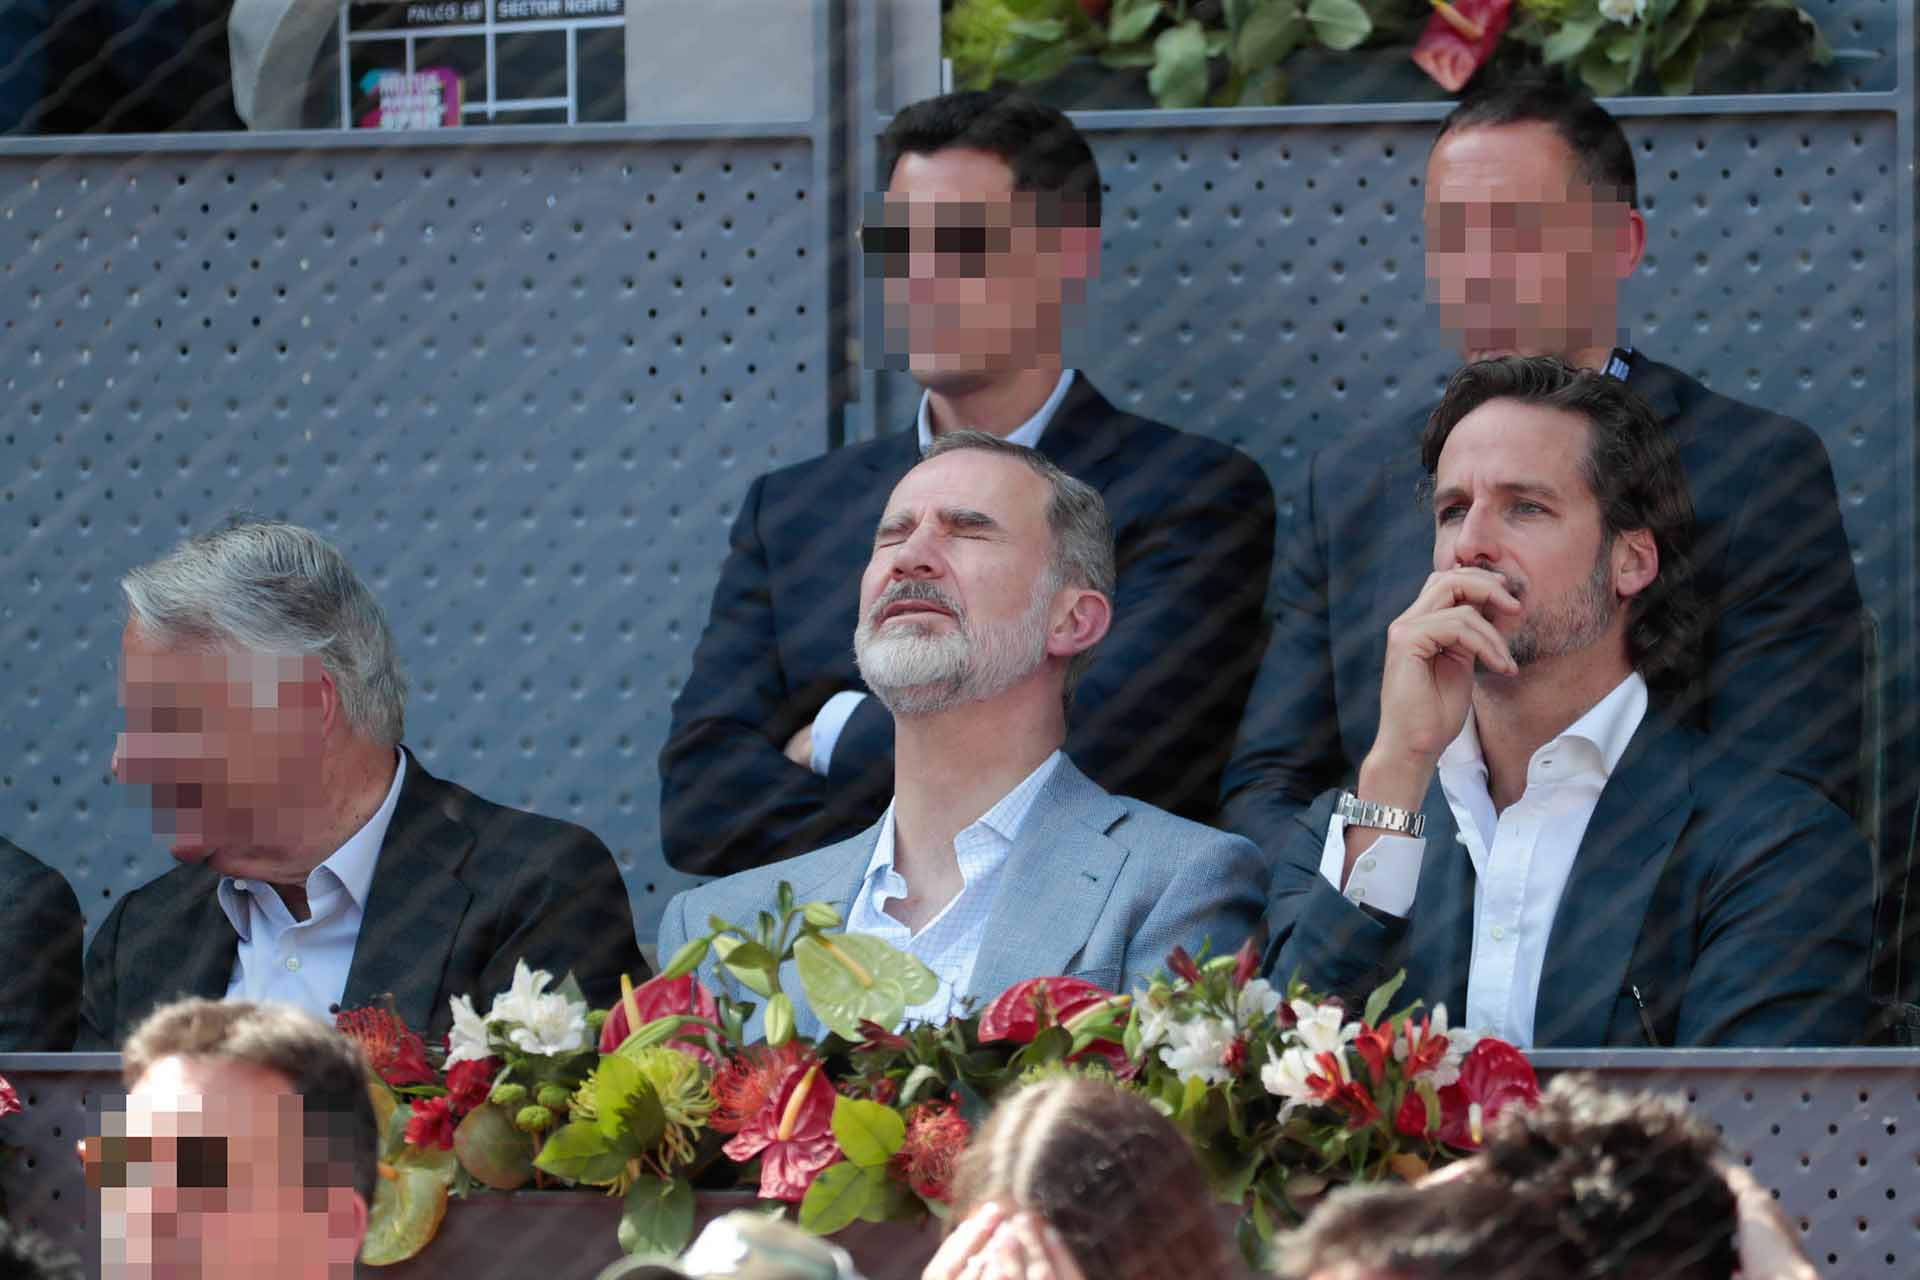 El rey Felipe VI aparece por sorpresa en el partido de Rafa Nadal y Carlos Alcaraz